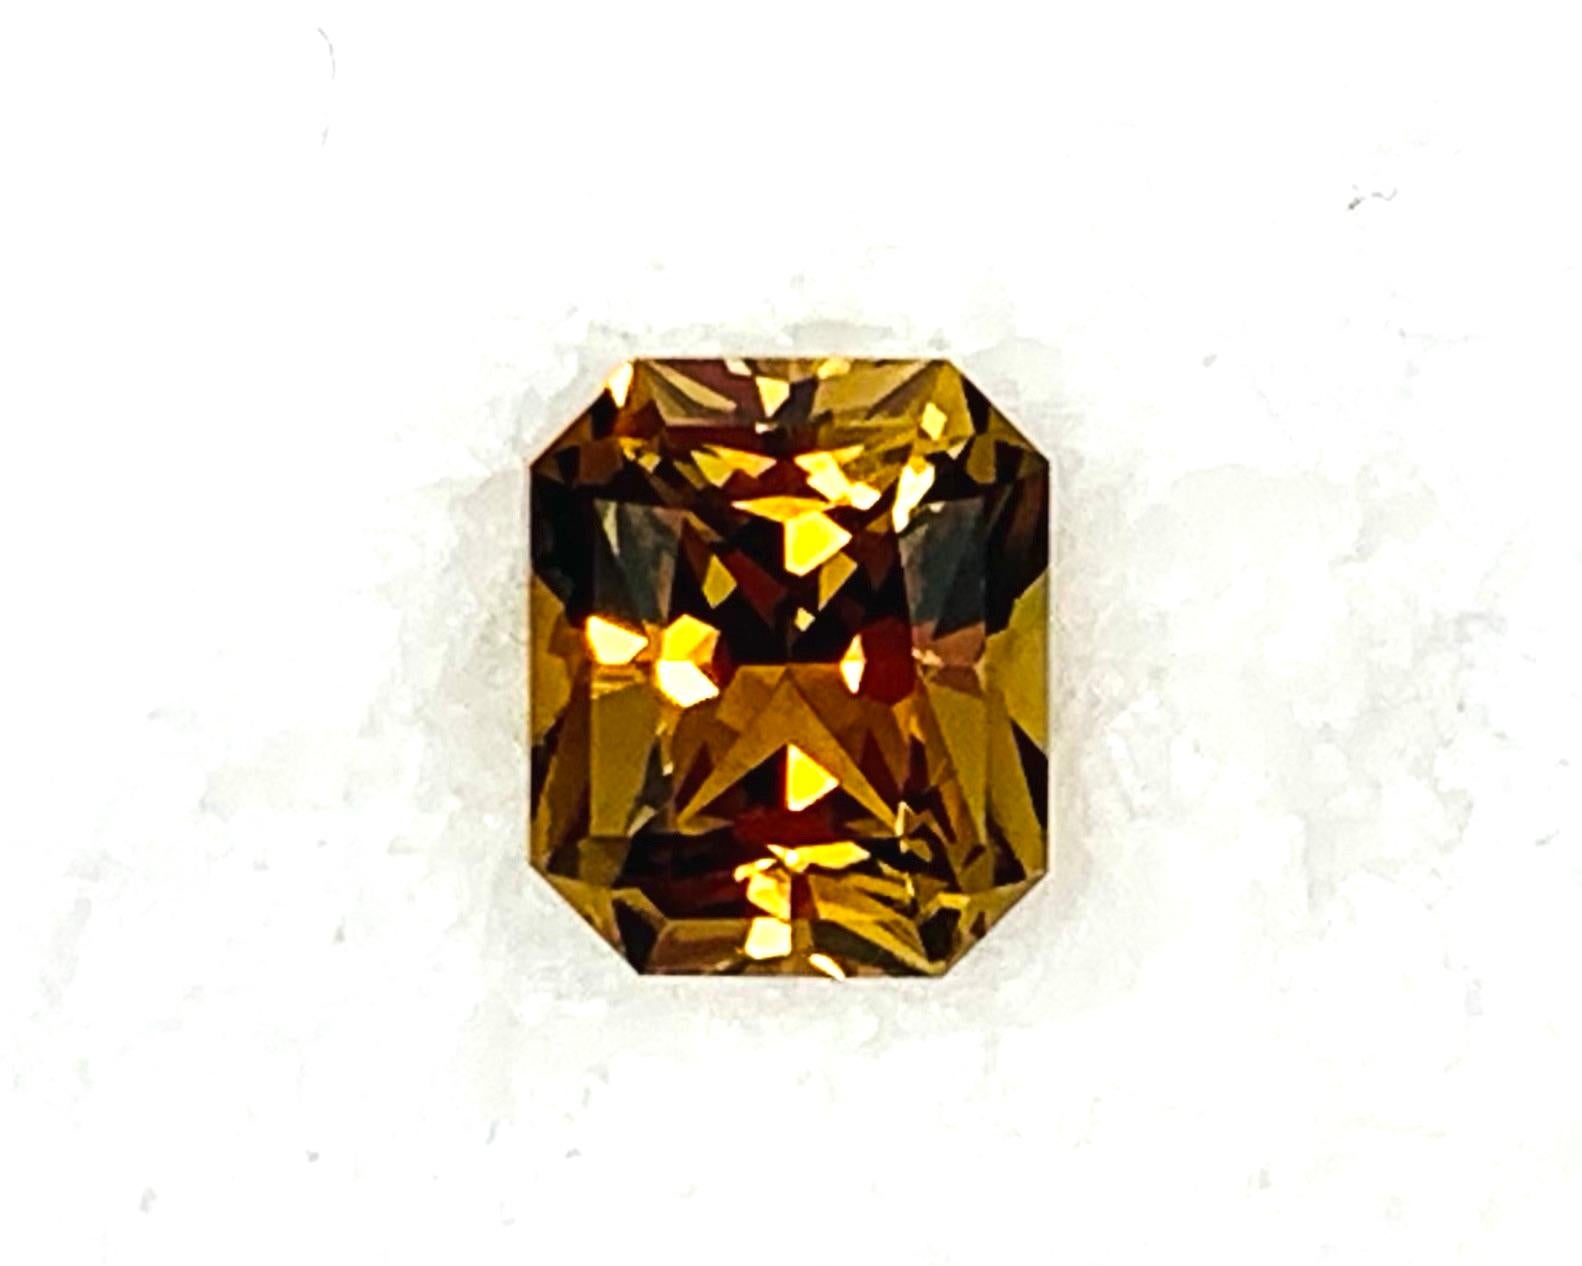 Zirkon ist eines der ältesten Edelsteine, das dem Menschen bekannt ist, und dieser goldene Zirkon würde als Ring, Anhänger oder Halskettenverstärker erstaunlich aussehen. Mit seiner goldenen Honigfarbe und seiner außergewöhnlichen Klarheit wurde